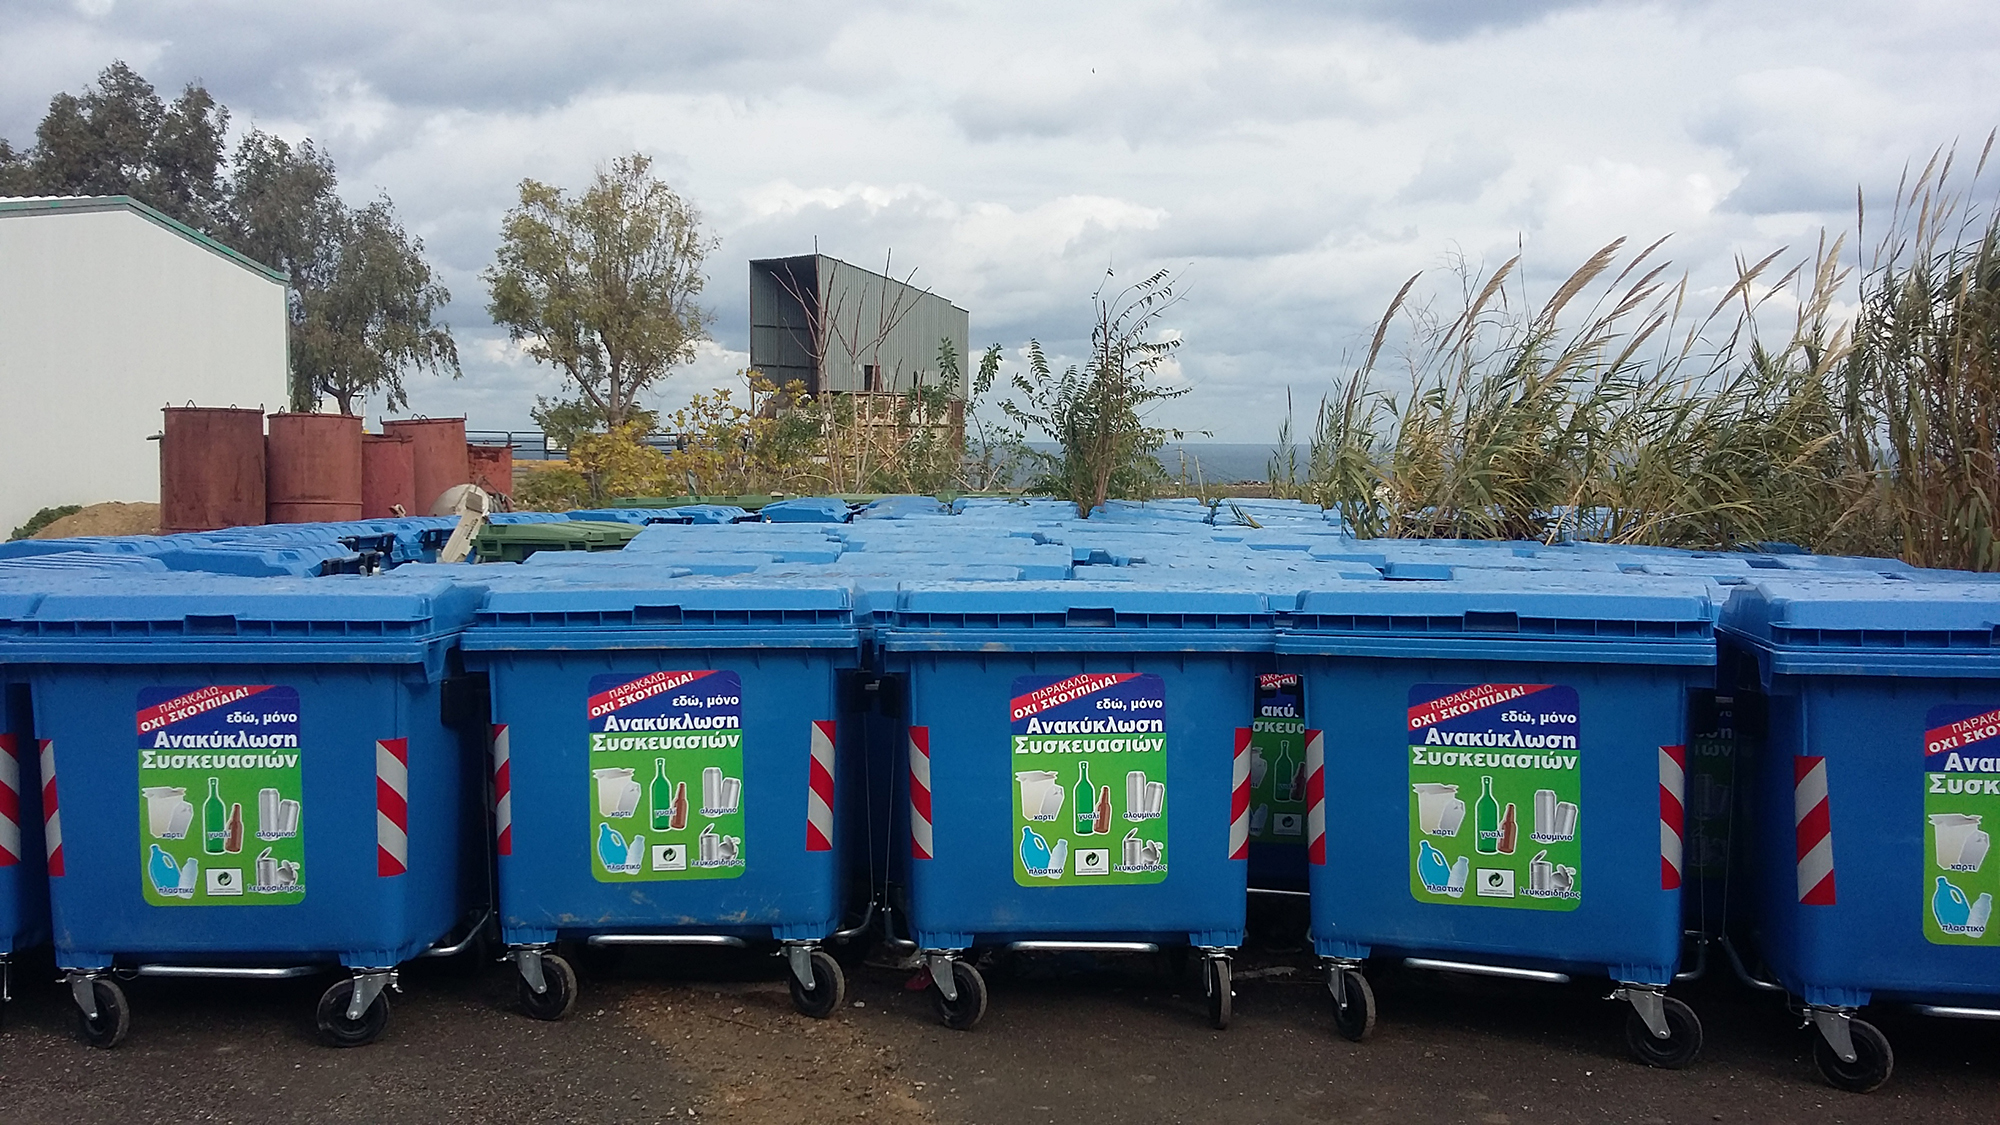 Διακόσιοι νέοι κάδοι ανακύκλωσης τοποθετούνται στο Ηράκλειο!